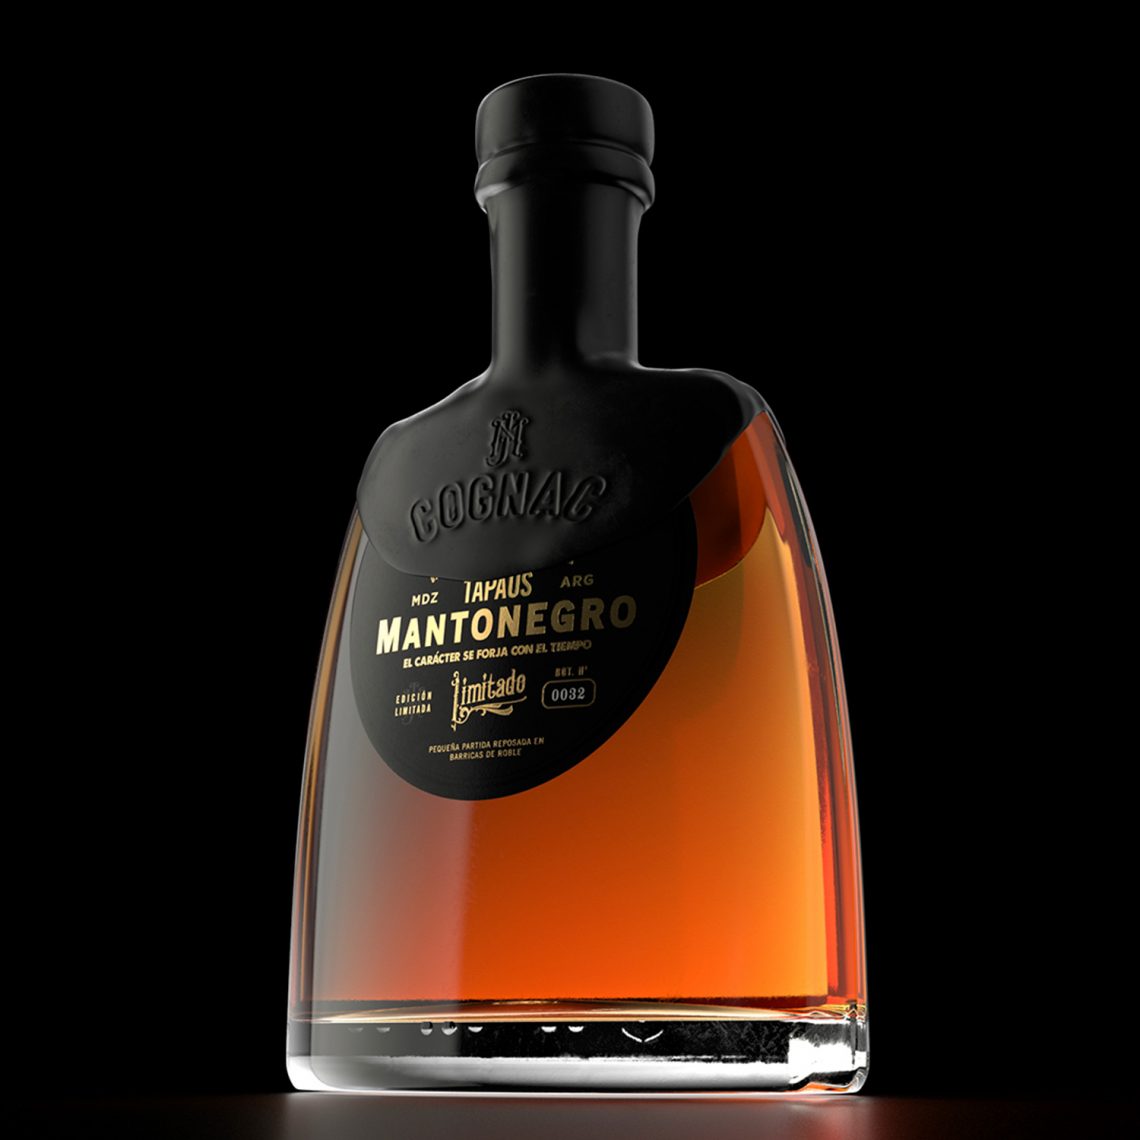 Mantonegro Cognac édition limitée